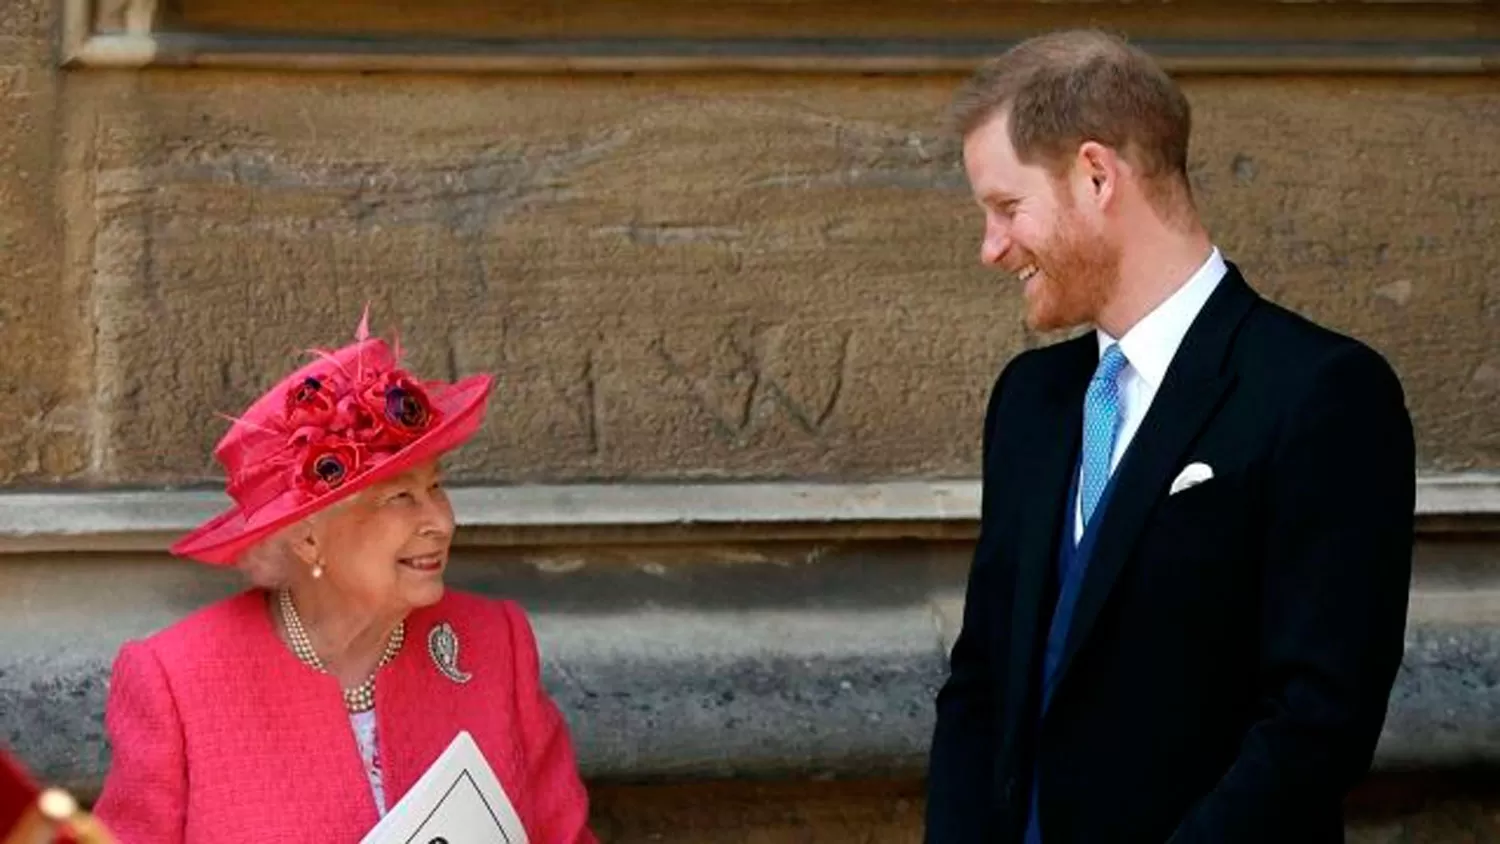 La reina Isabel II accedió a que Harry y Meghan se distancien de los roles reales